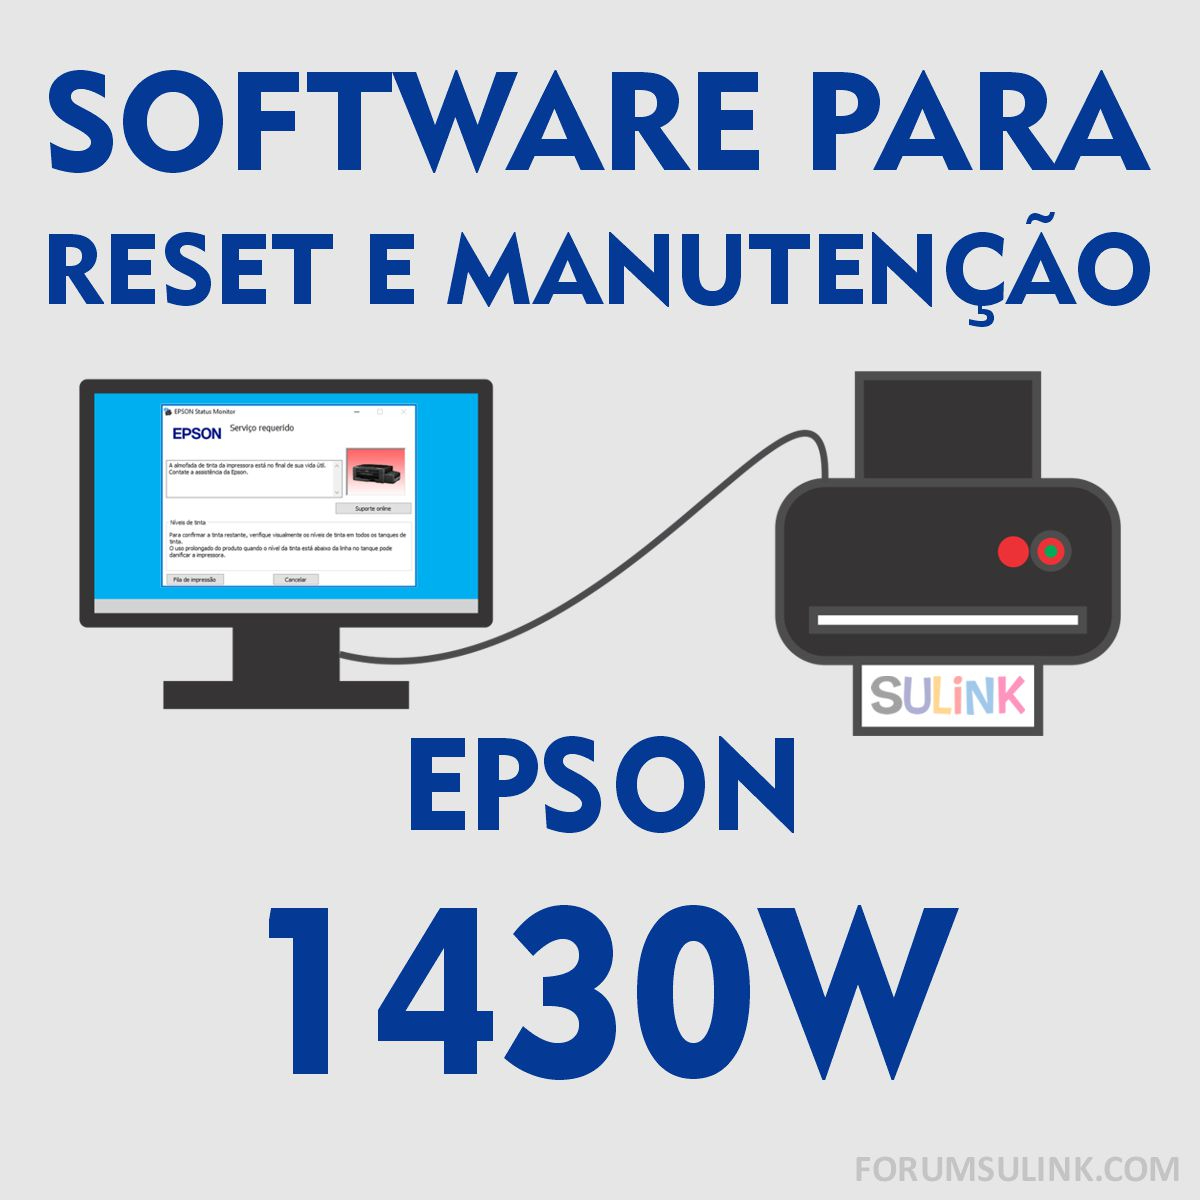 Epson 1430W | Software para Reset das Almofadas e Manutenção